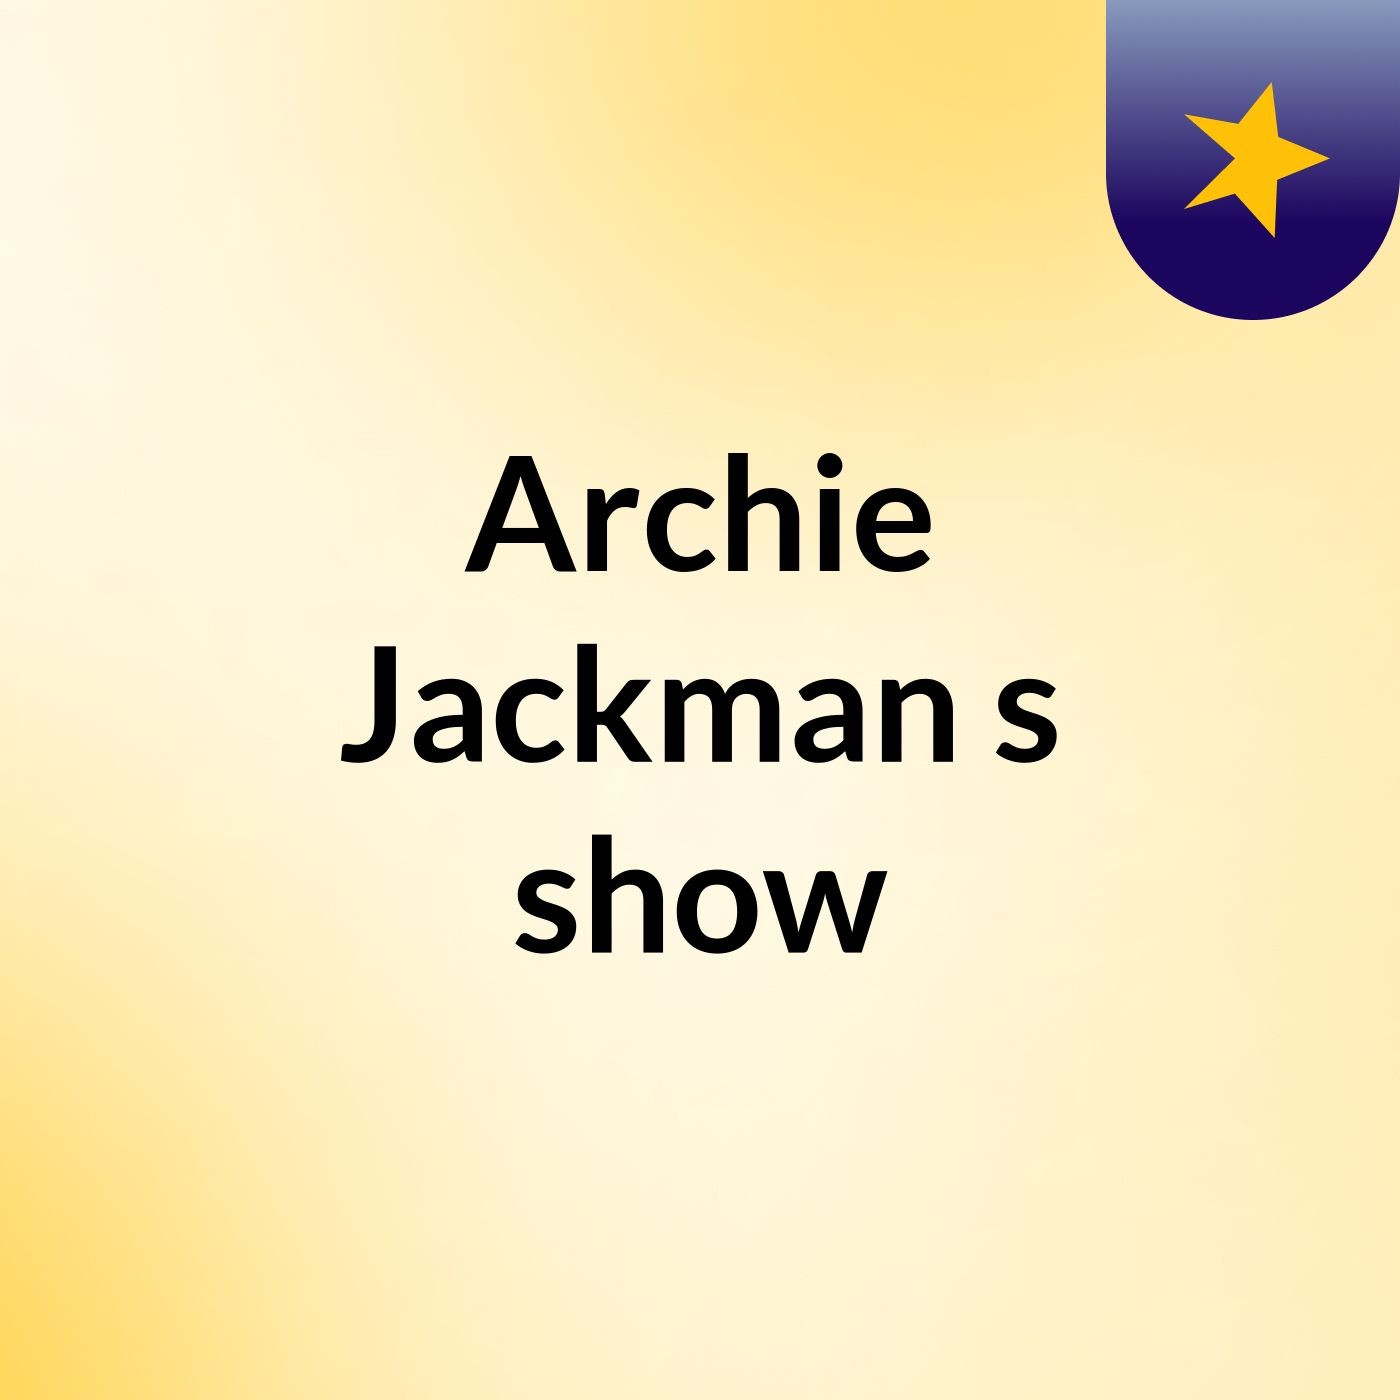 Archie Jackman's show